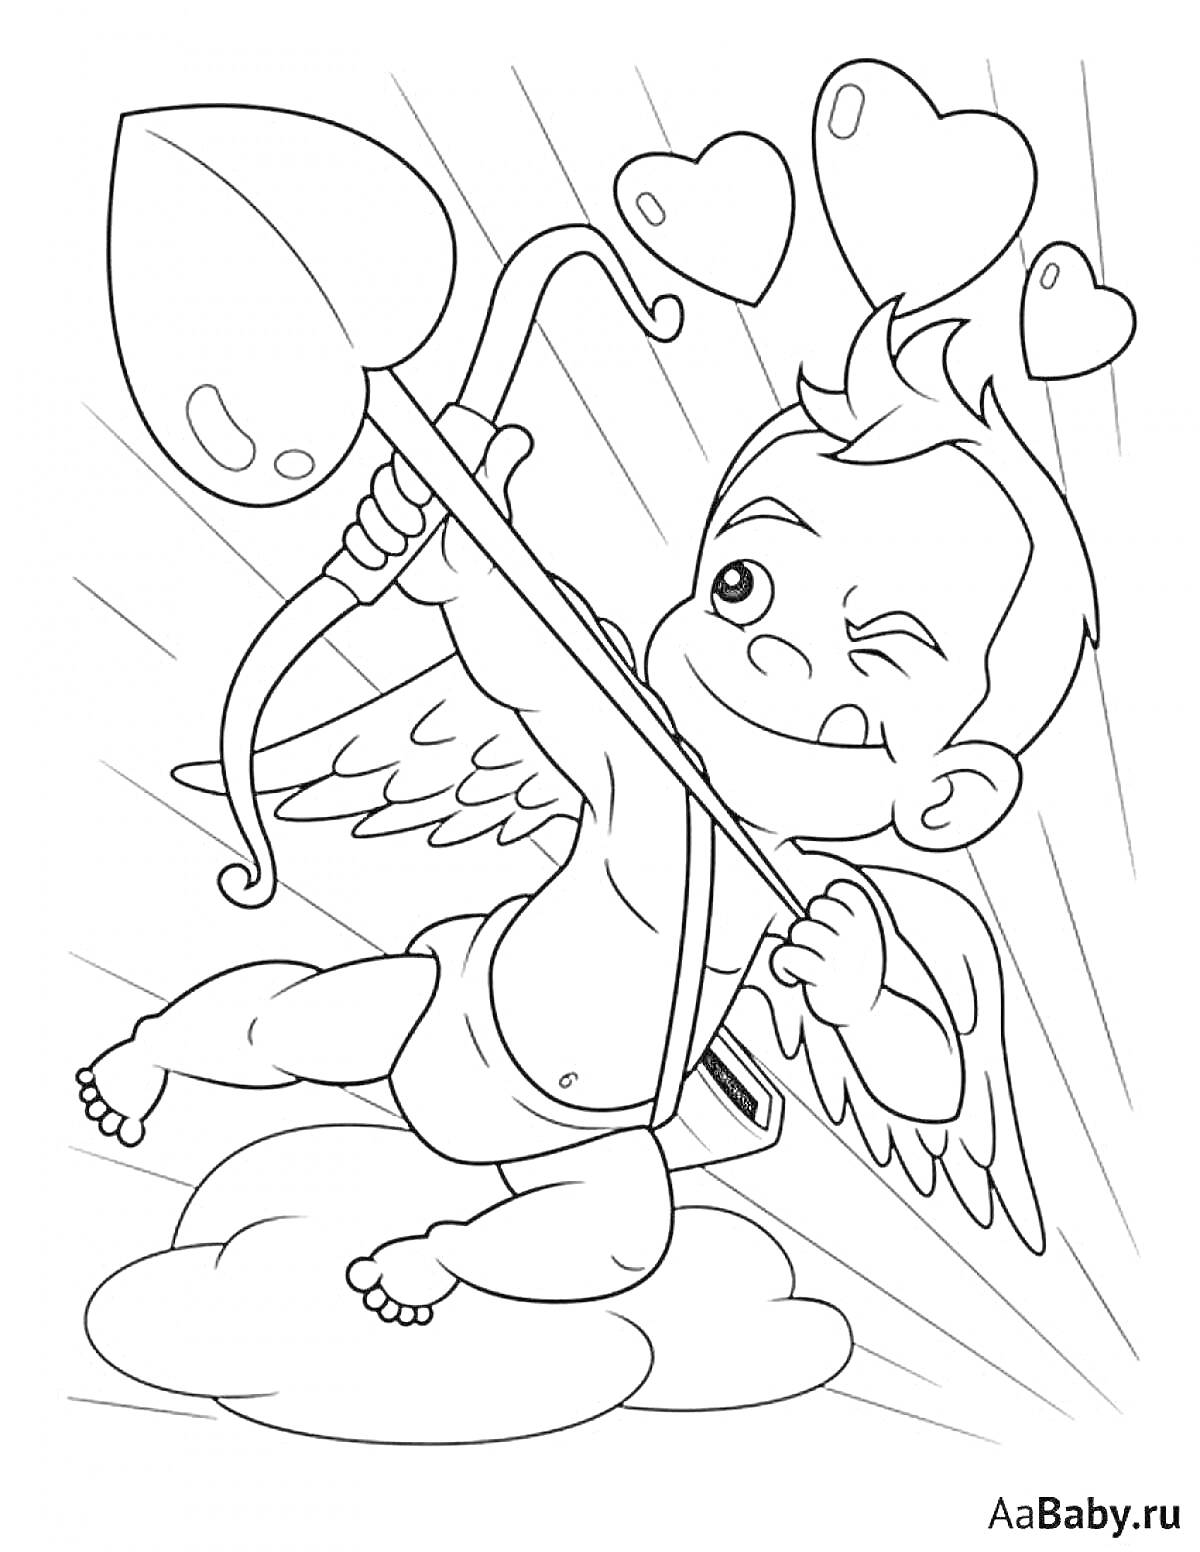 Раскраска Купидон с луком и стрелой на облаке, стреляющий в сердце, три сердца, крылья.